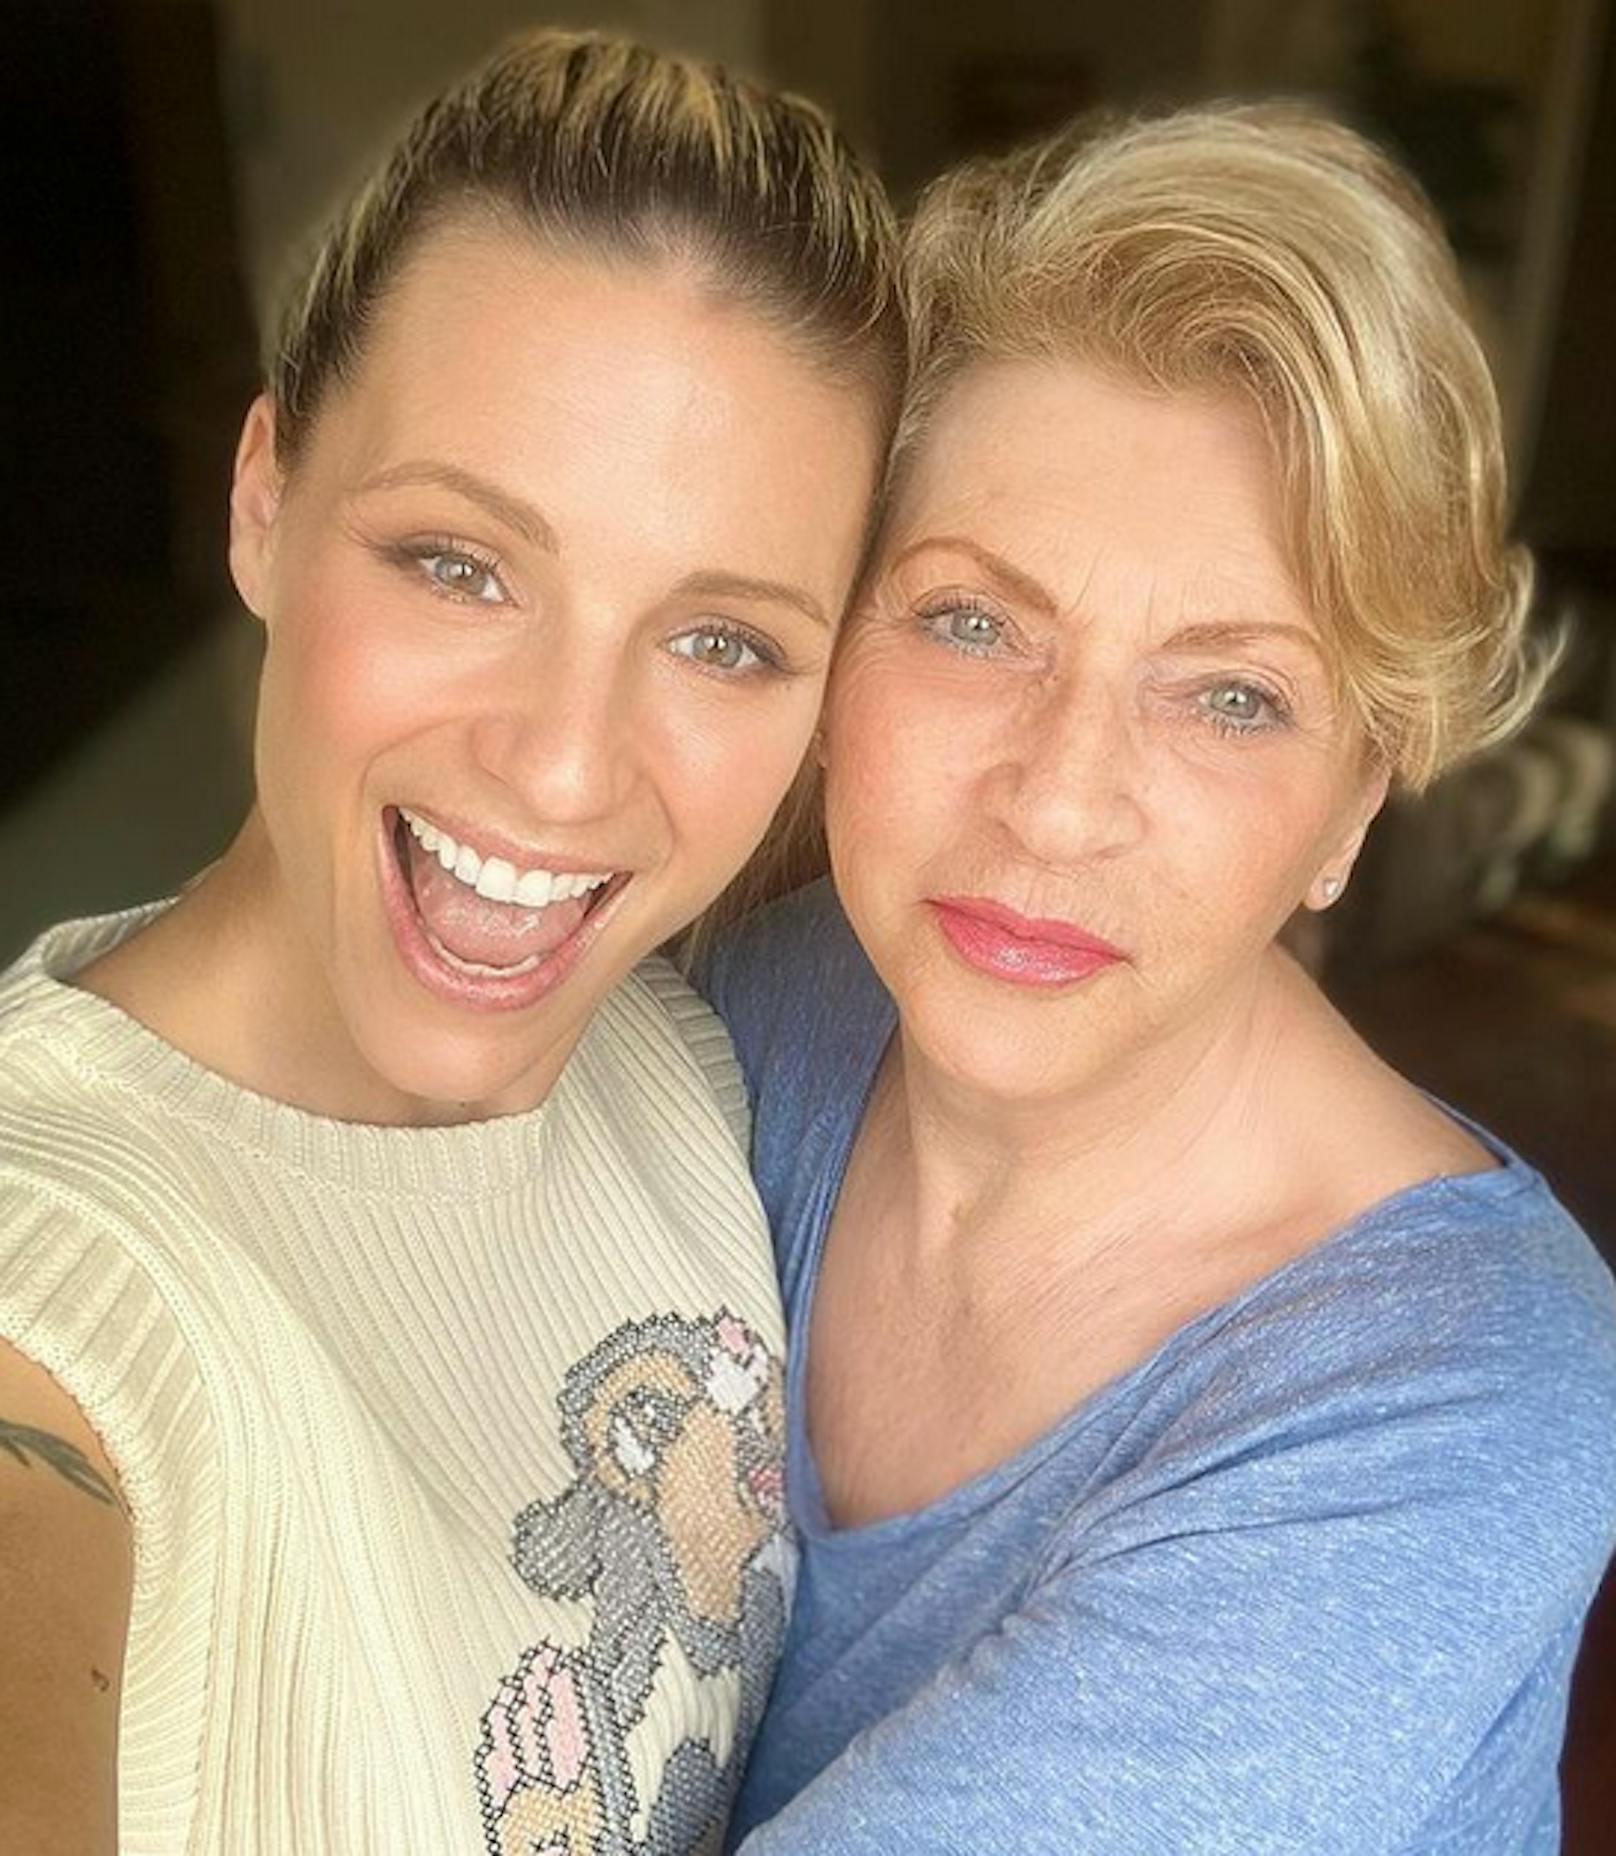 Michelle Hunziker macht mit diesem Selfie ihrer Mama <strong>Ineke</strong> nach schwierigen Zeiten in der Vergangenheit eine berührende Liebeserklärung: "Ich liebe dich", schreibt sie unter das gemeinsame Foto der beiden Hunziker-Schönheiten.<br>